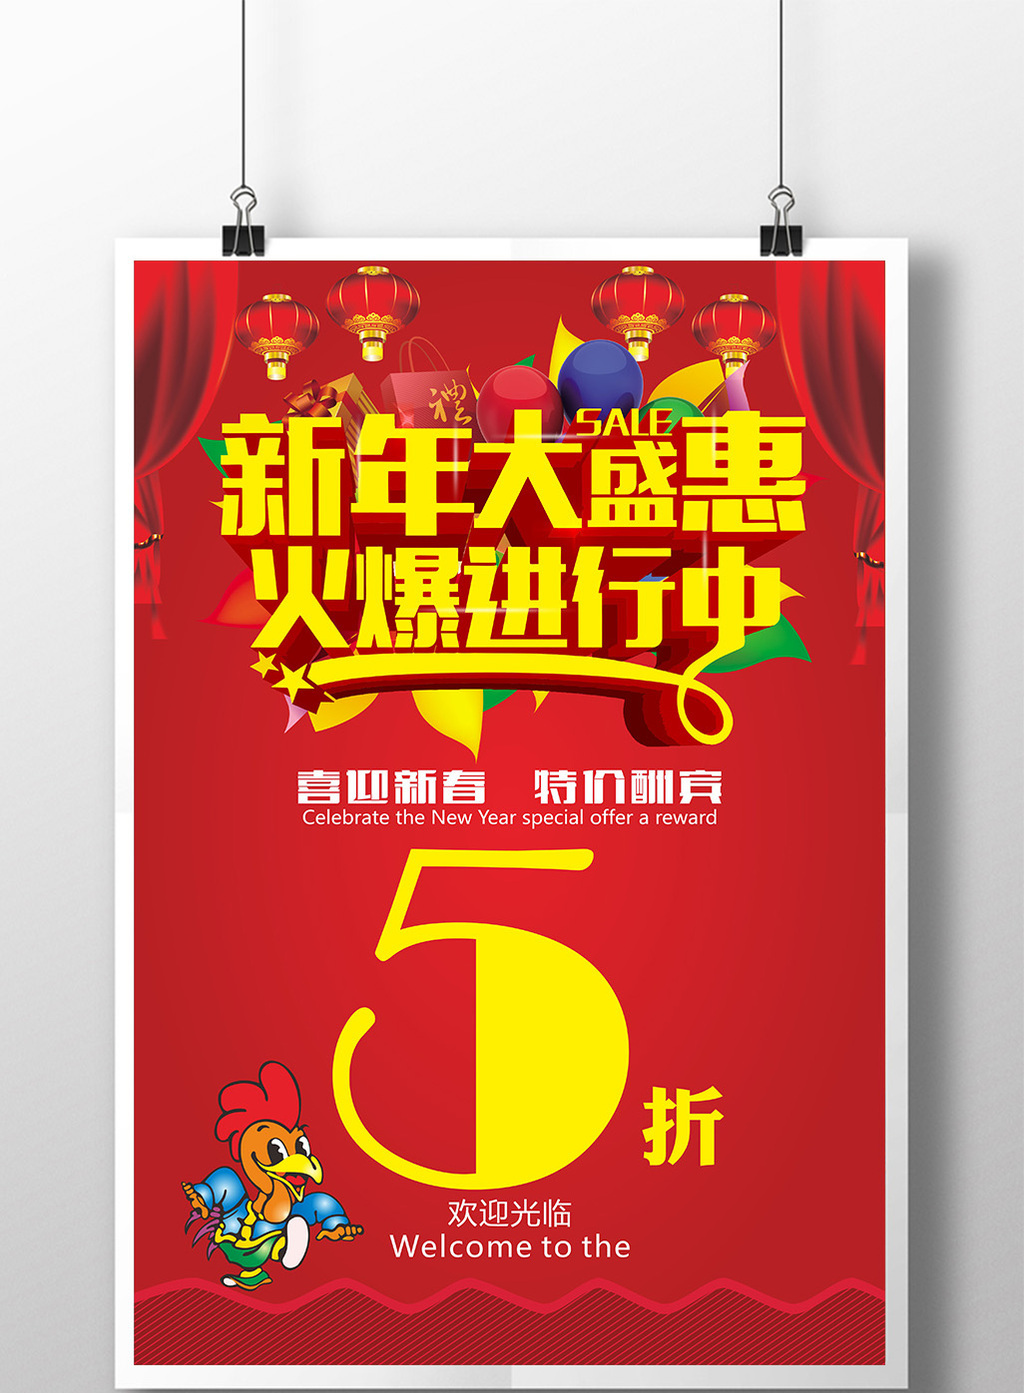 新年钜惠火爆促销海报设计模板免费下载 